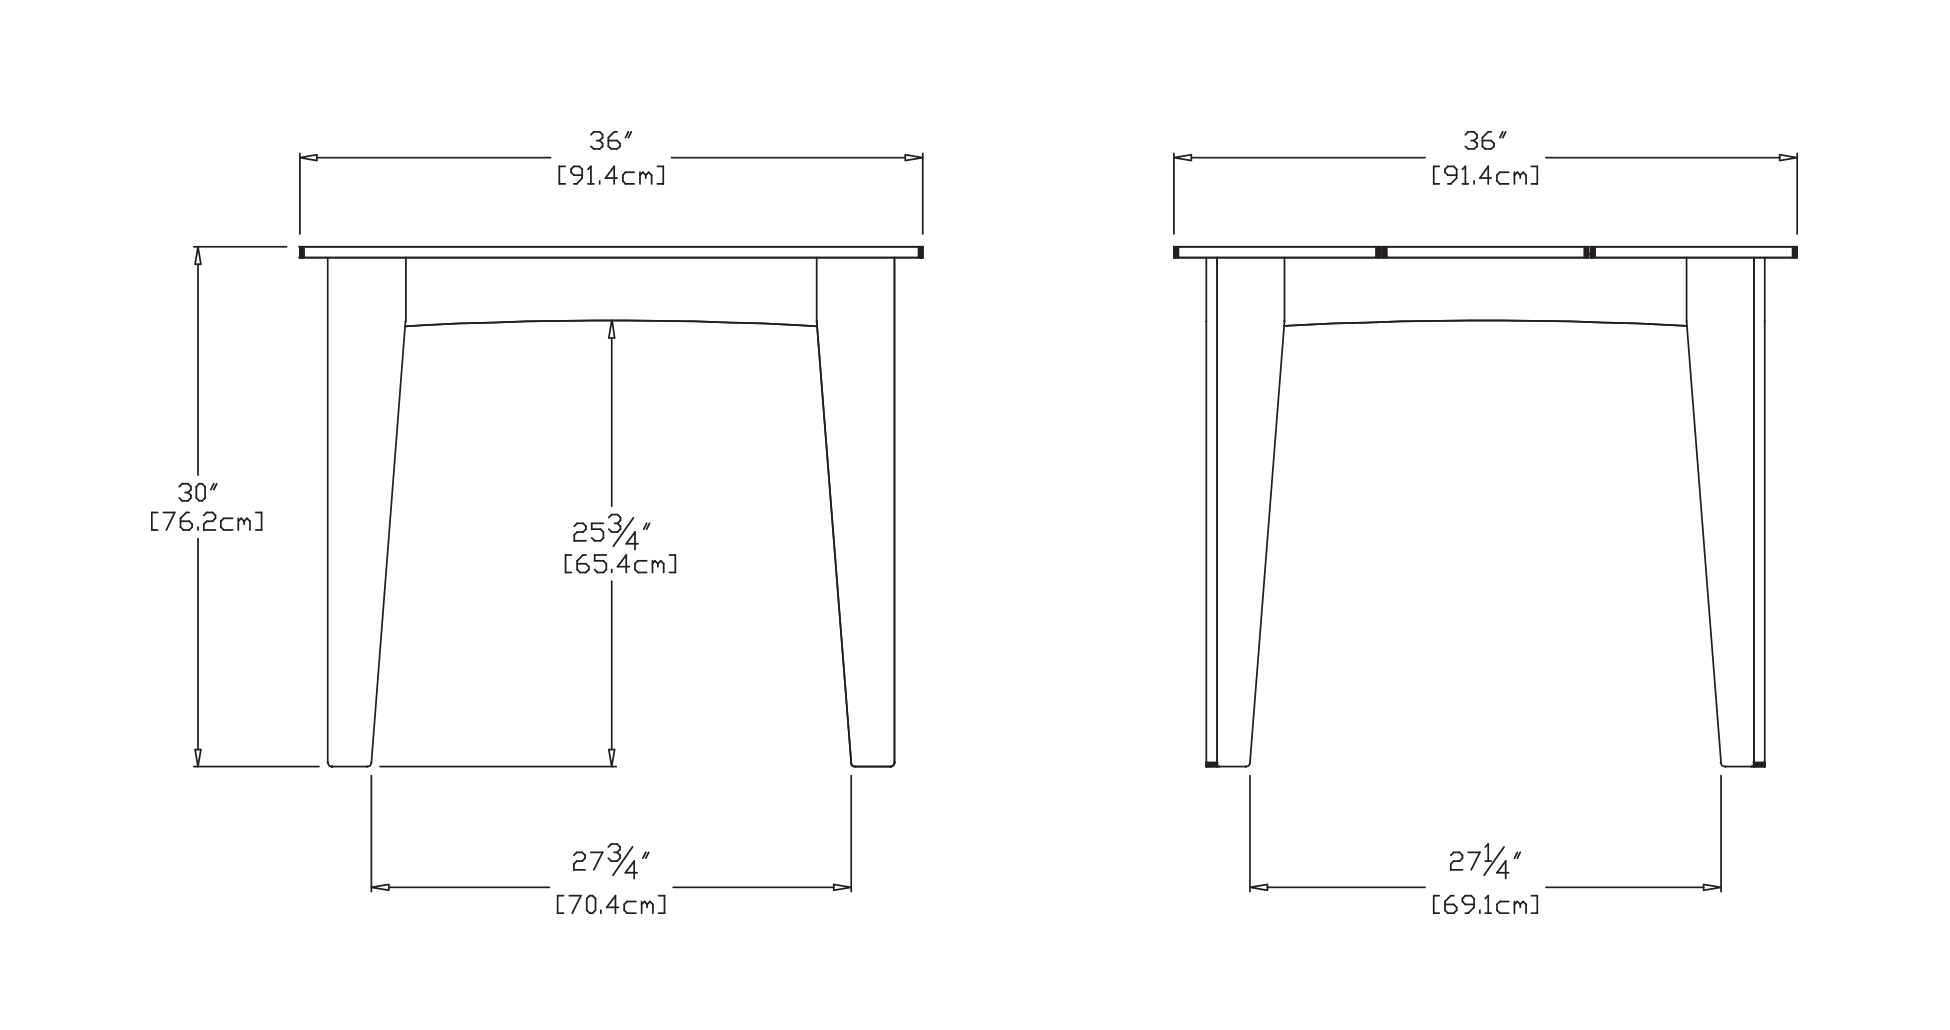 Alfresco Square Table (36 inch) Dimensions